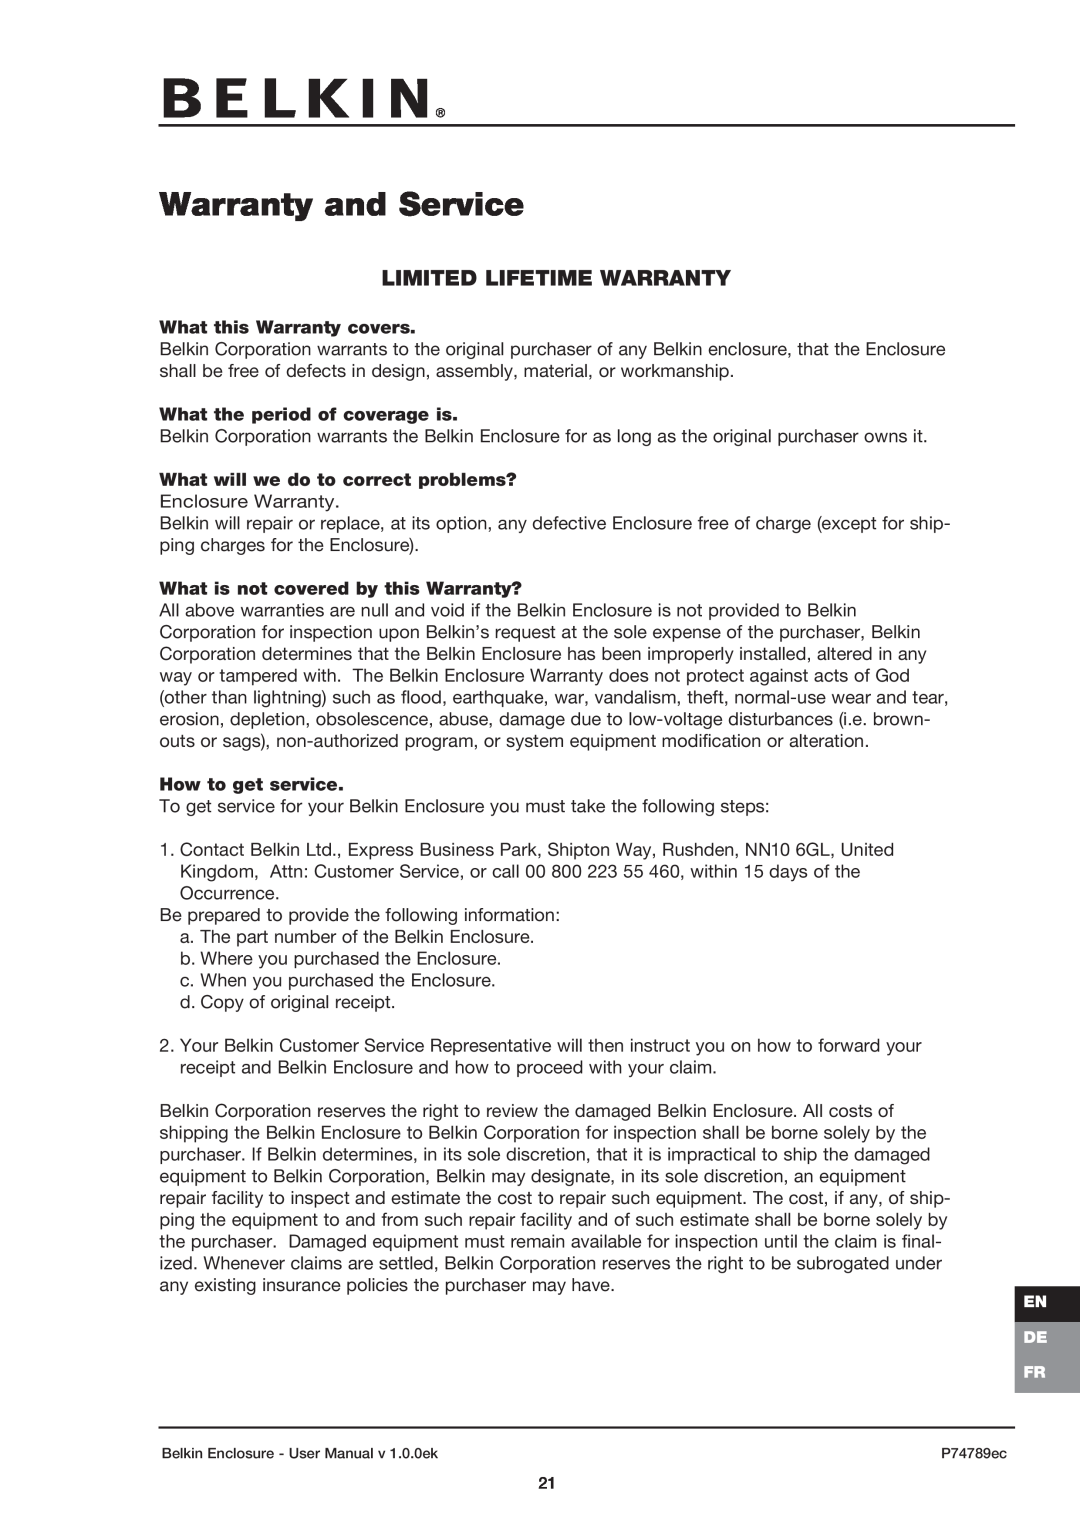 Belkin 42U user manual Warranty and Service, Limited Lifetime Warranty 